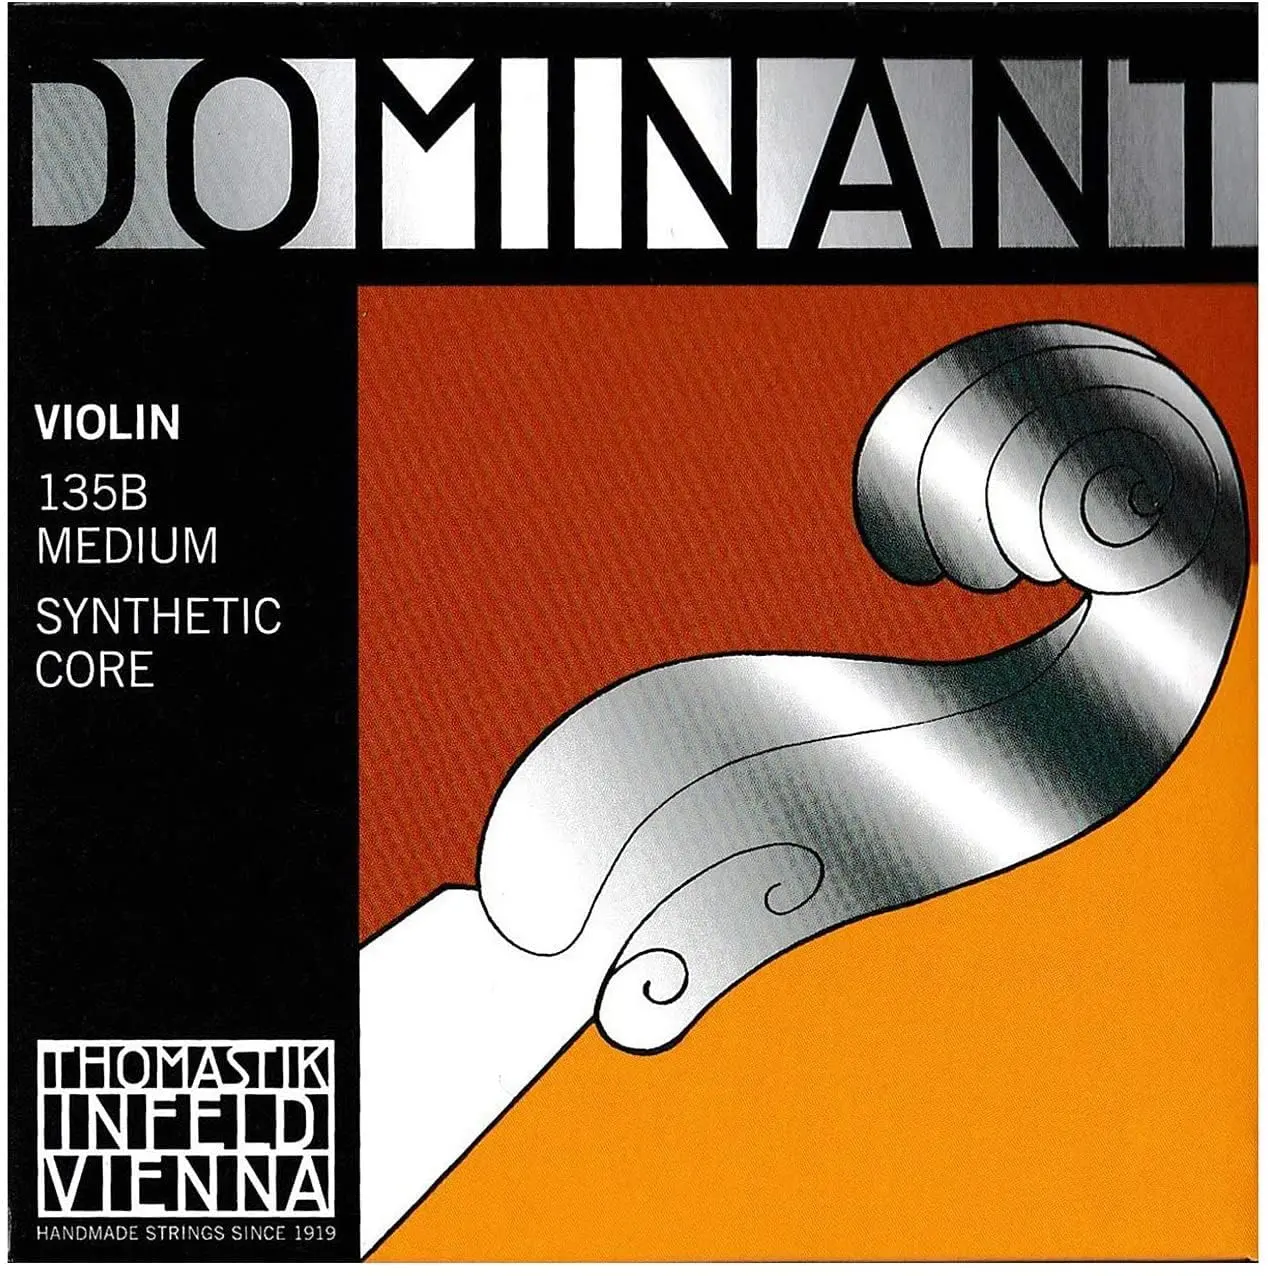 violin dominant - Are dominant violin strings good